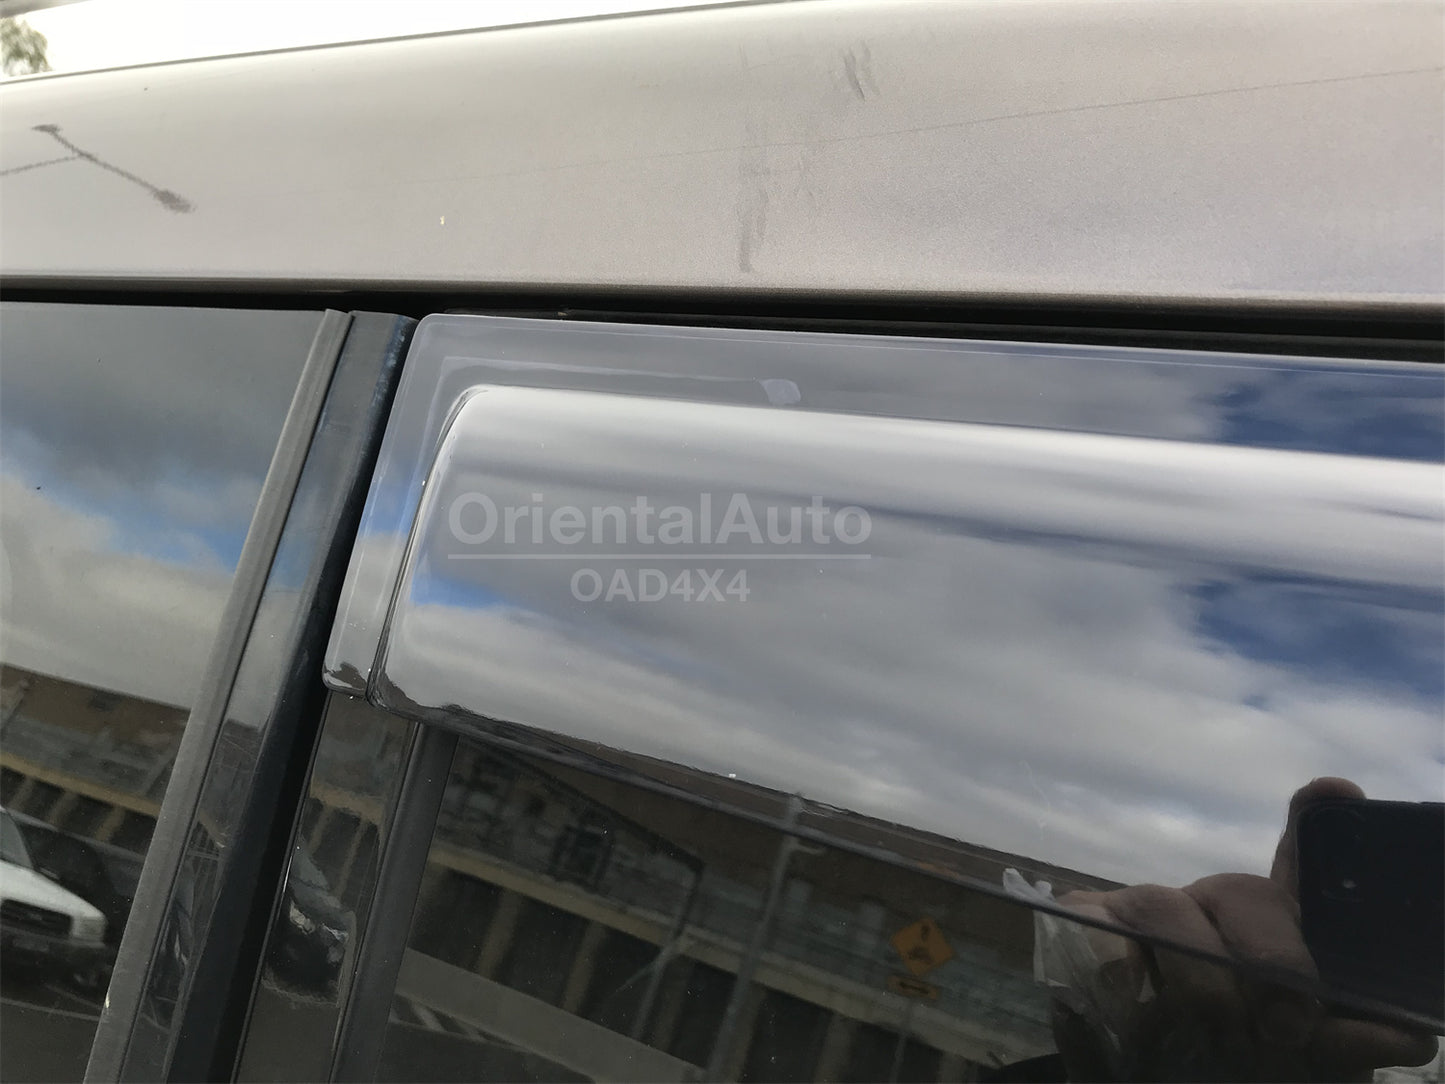 Injection Weathershields Weather Shields Window Visor For Mitsubishi Pajero 2000+